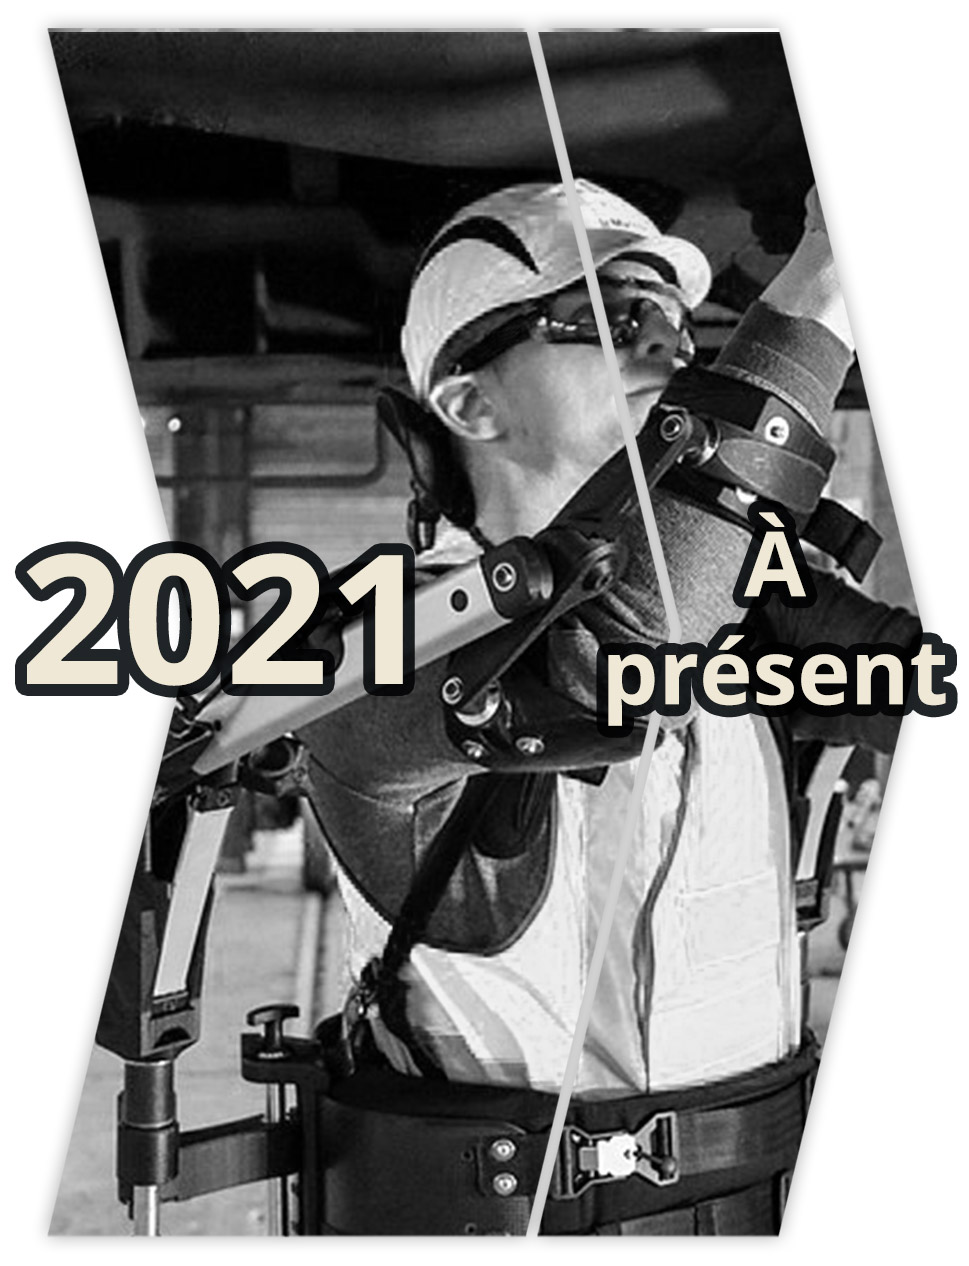 2021-a-present